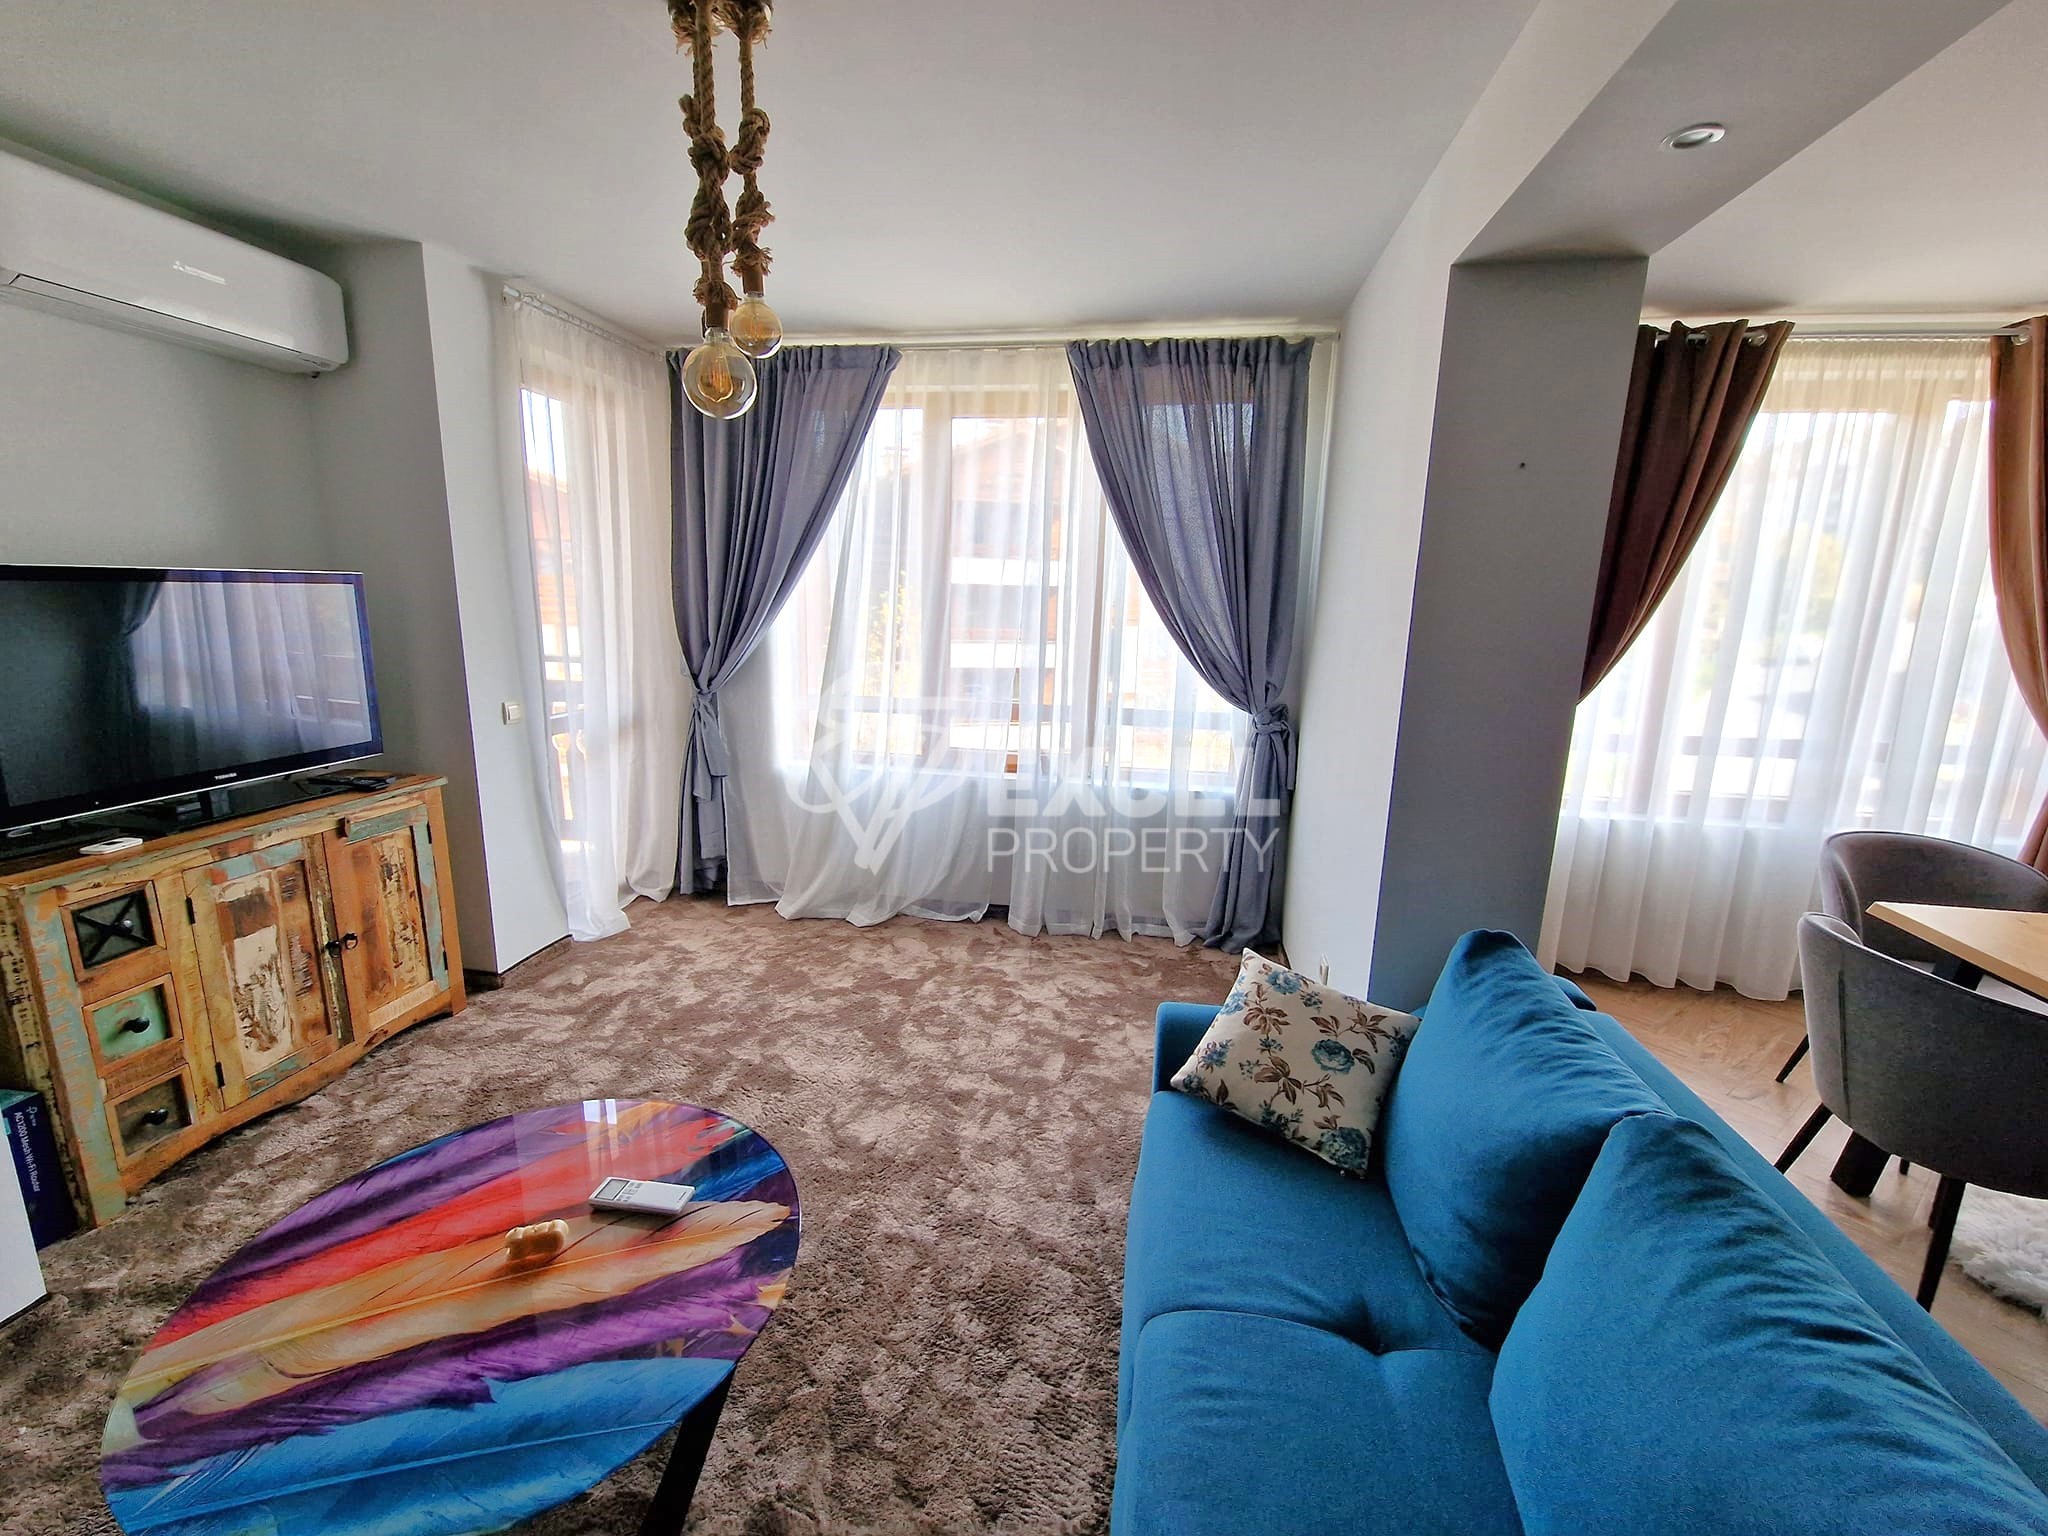 Тристаен апартамент с ново обзавеждане за продажба в Банско до комплекс Иван Рилски